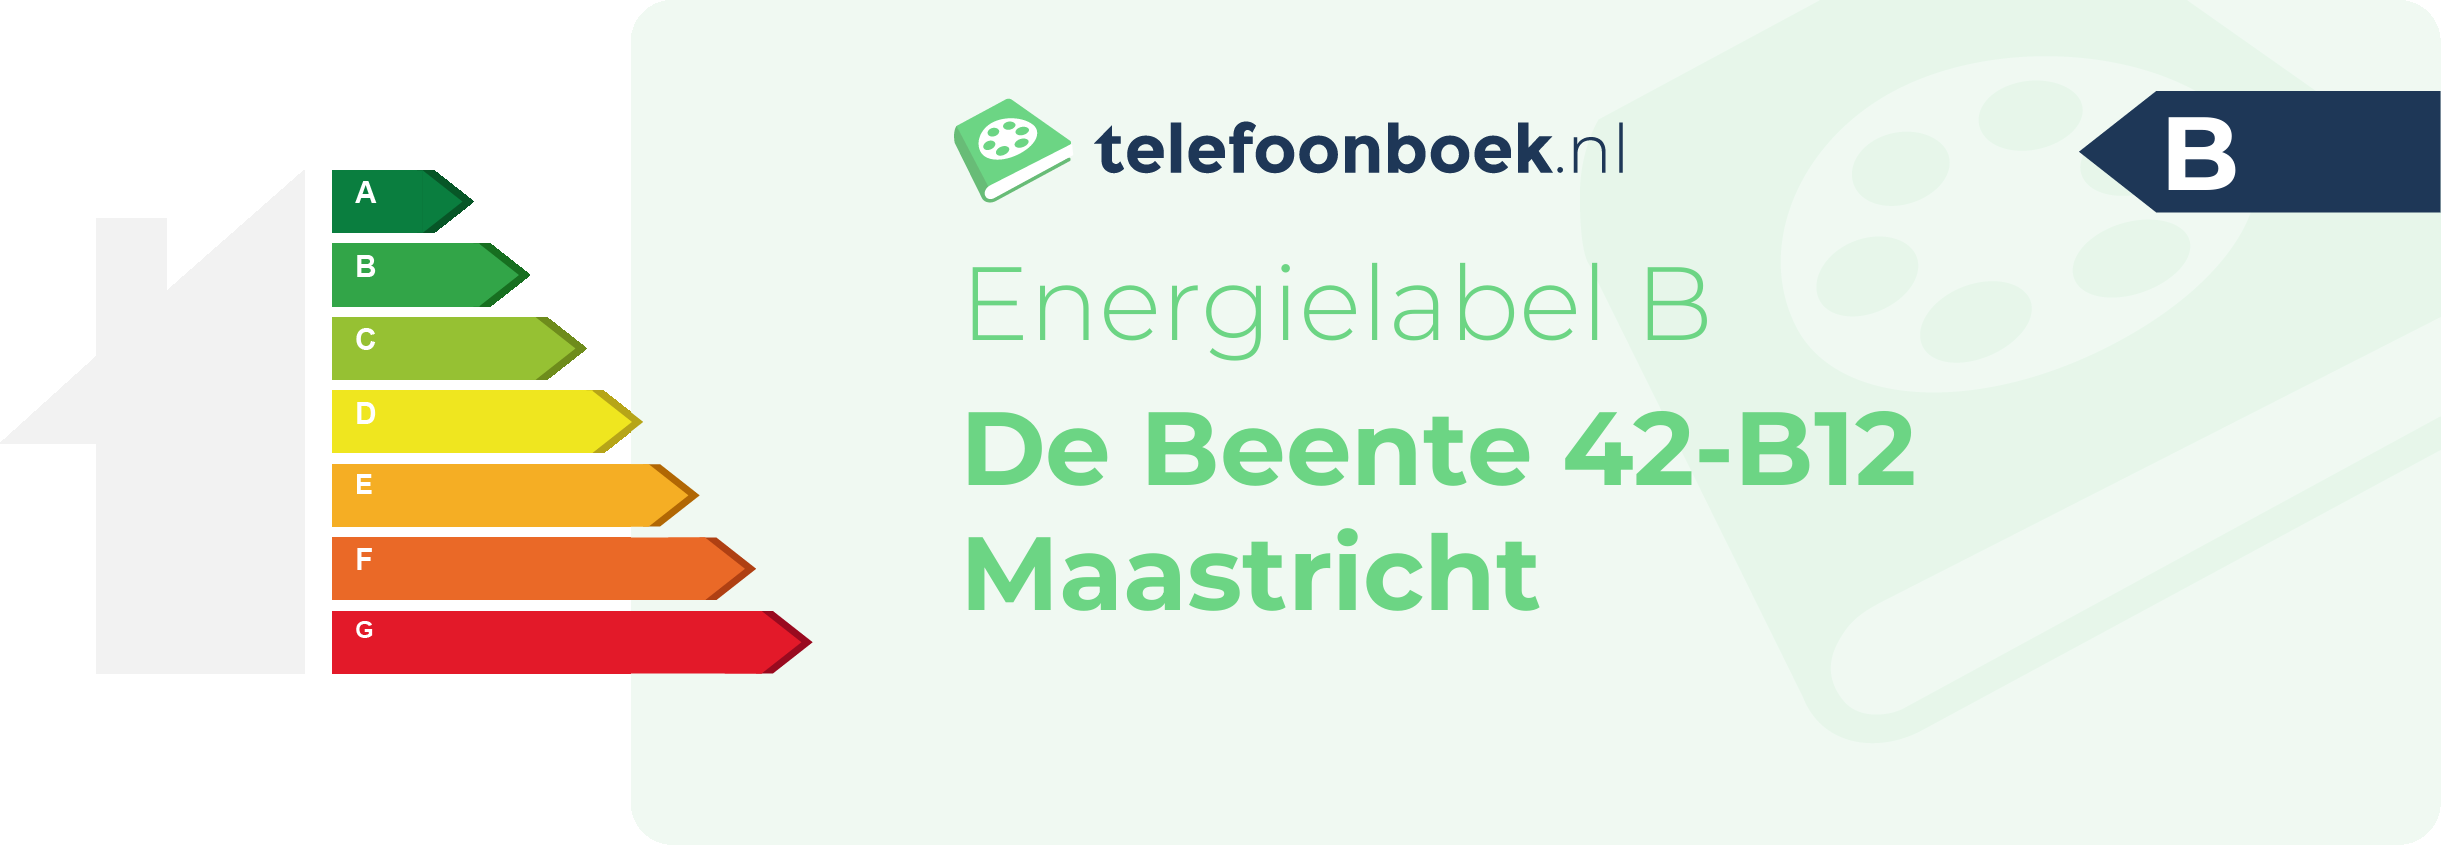 Energielabel De Beente 42-B12 Maastricht